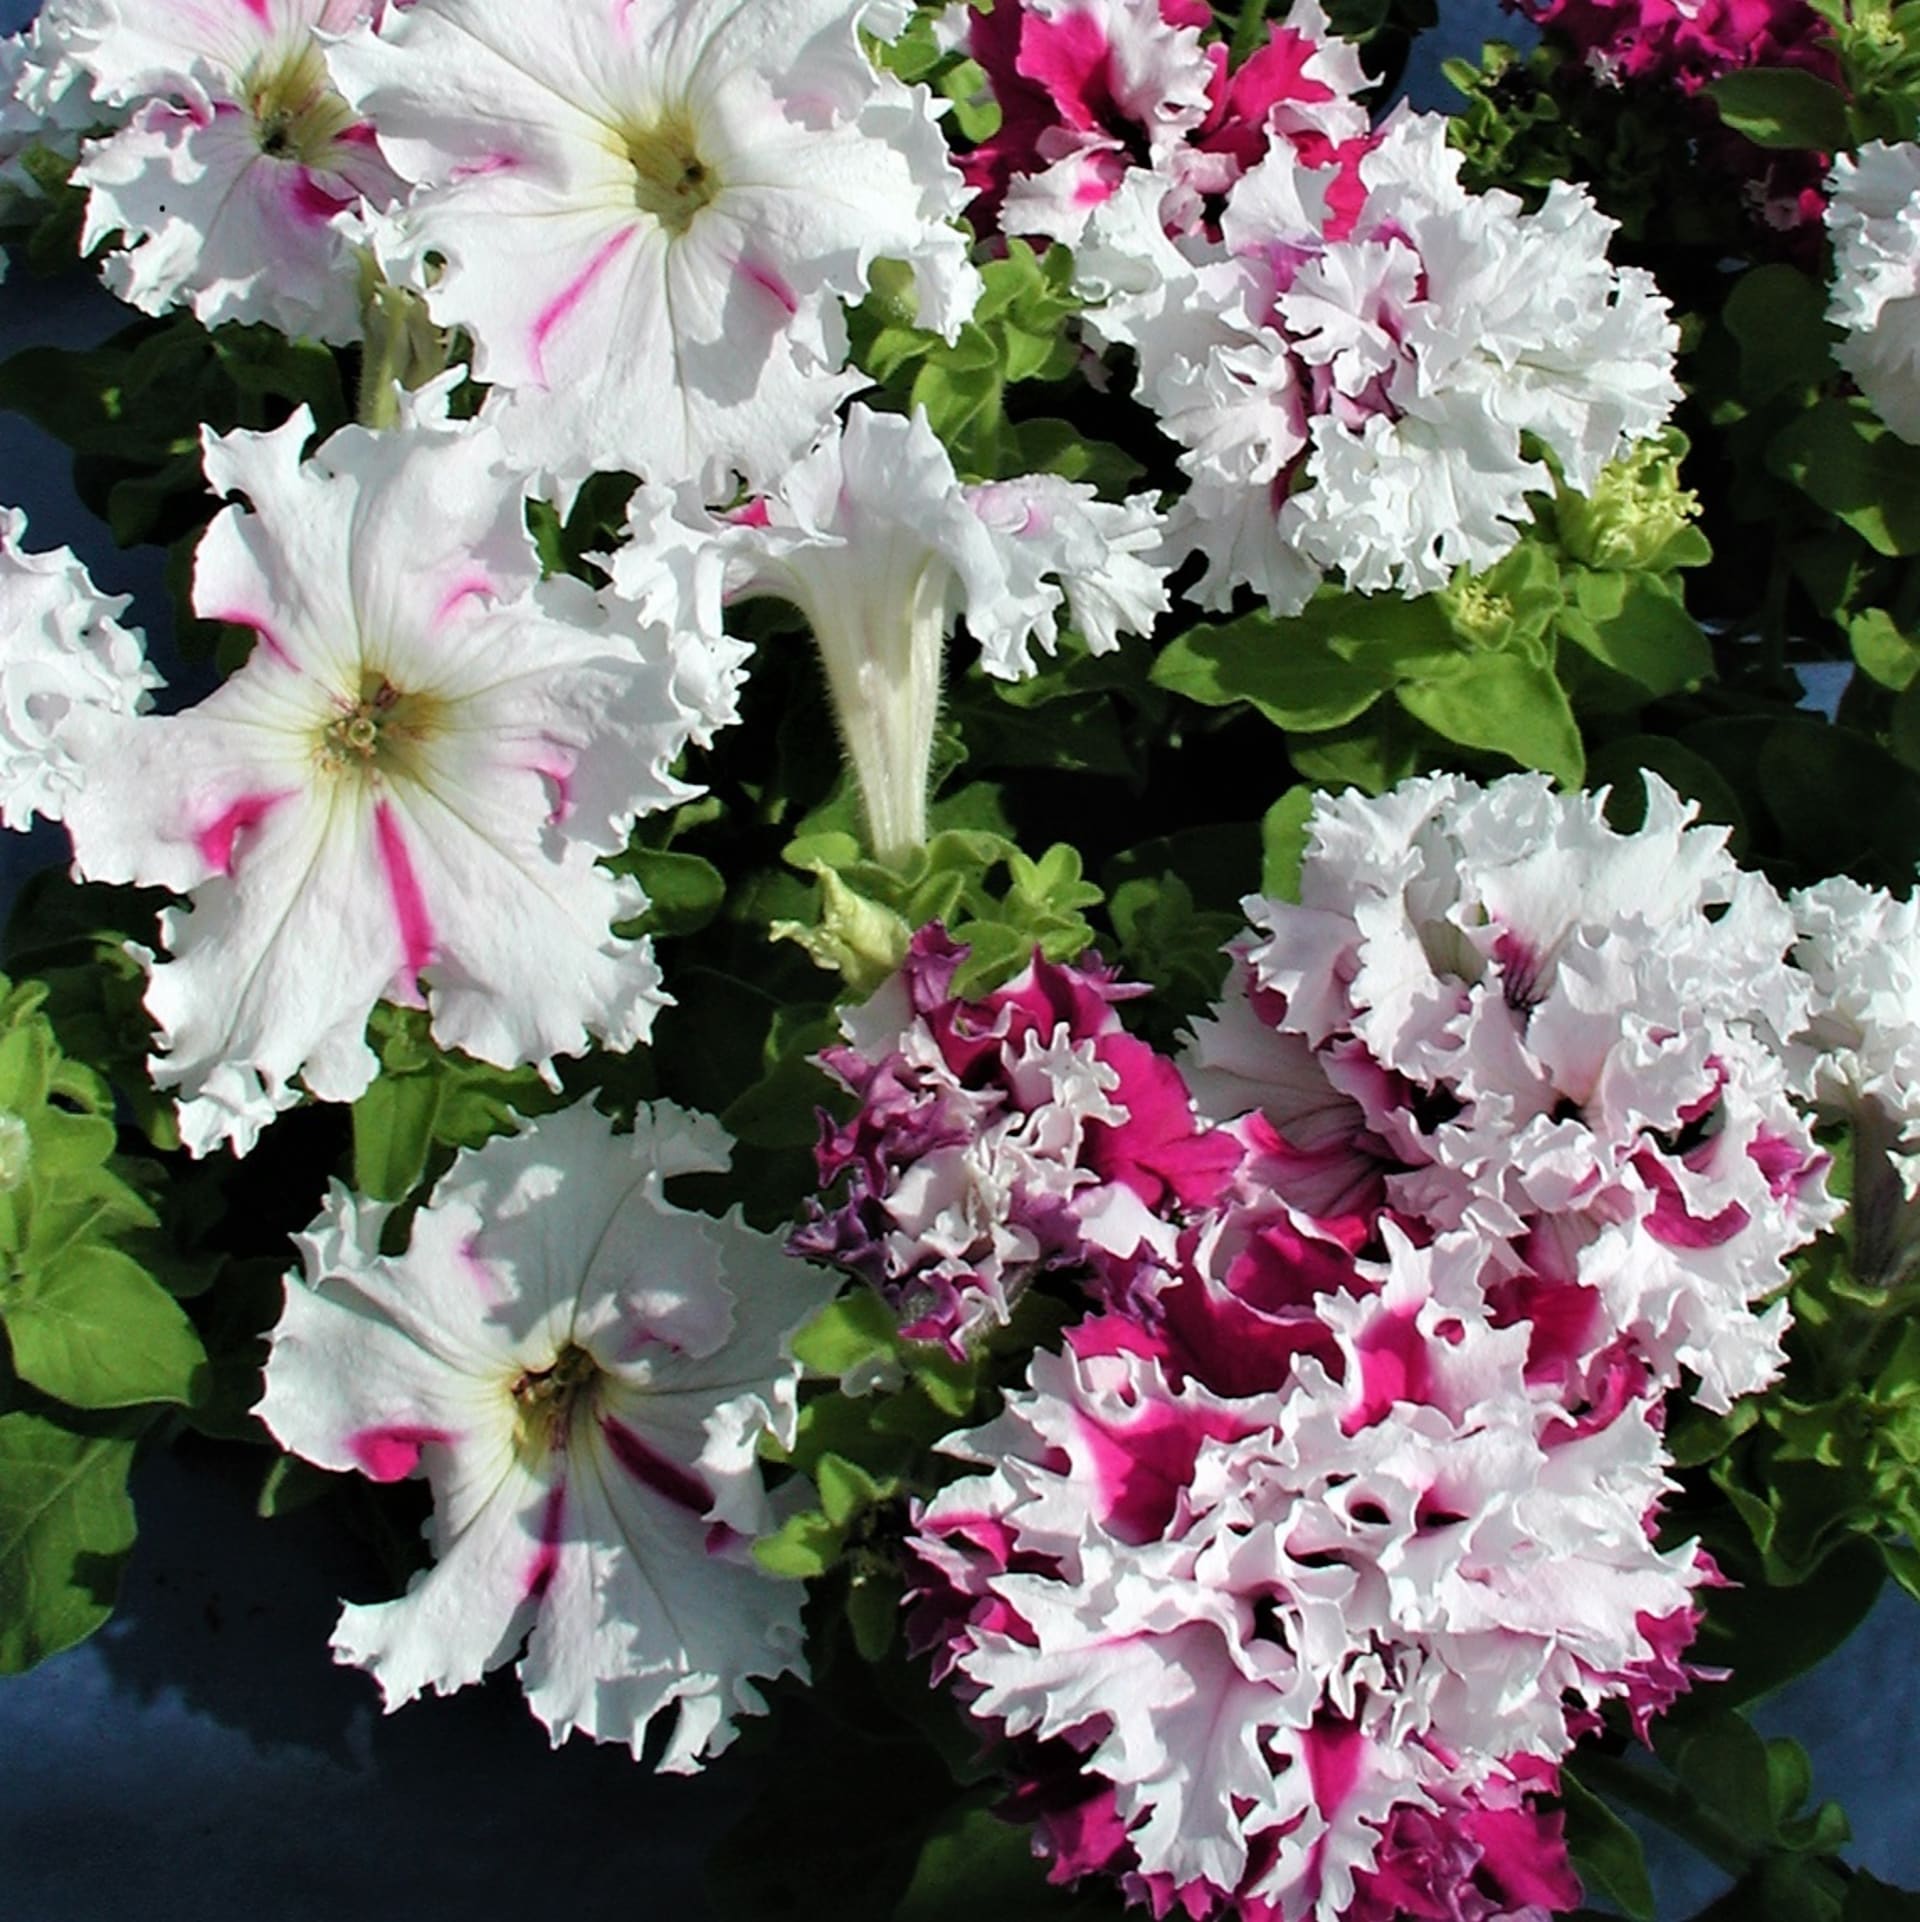 Petúnie velkokvěté (grandiflory): Pozdrav z Jaroměře má bílé květy s růžovými a fialovými skvrnami, třepenitý okraj květu, jsou jednoduché a plnokvěté